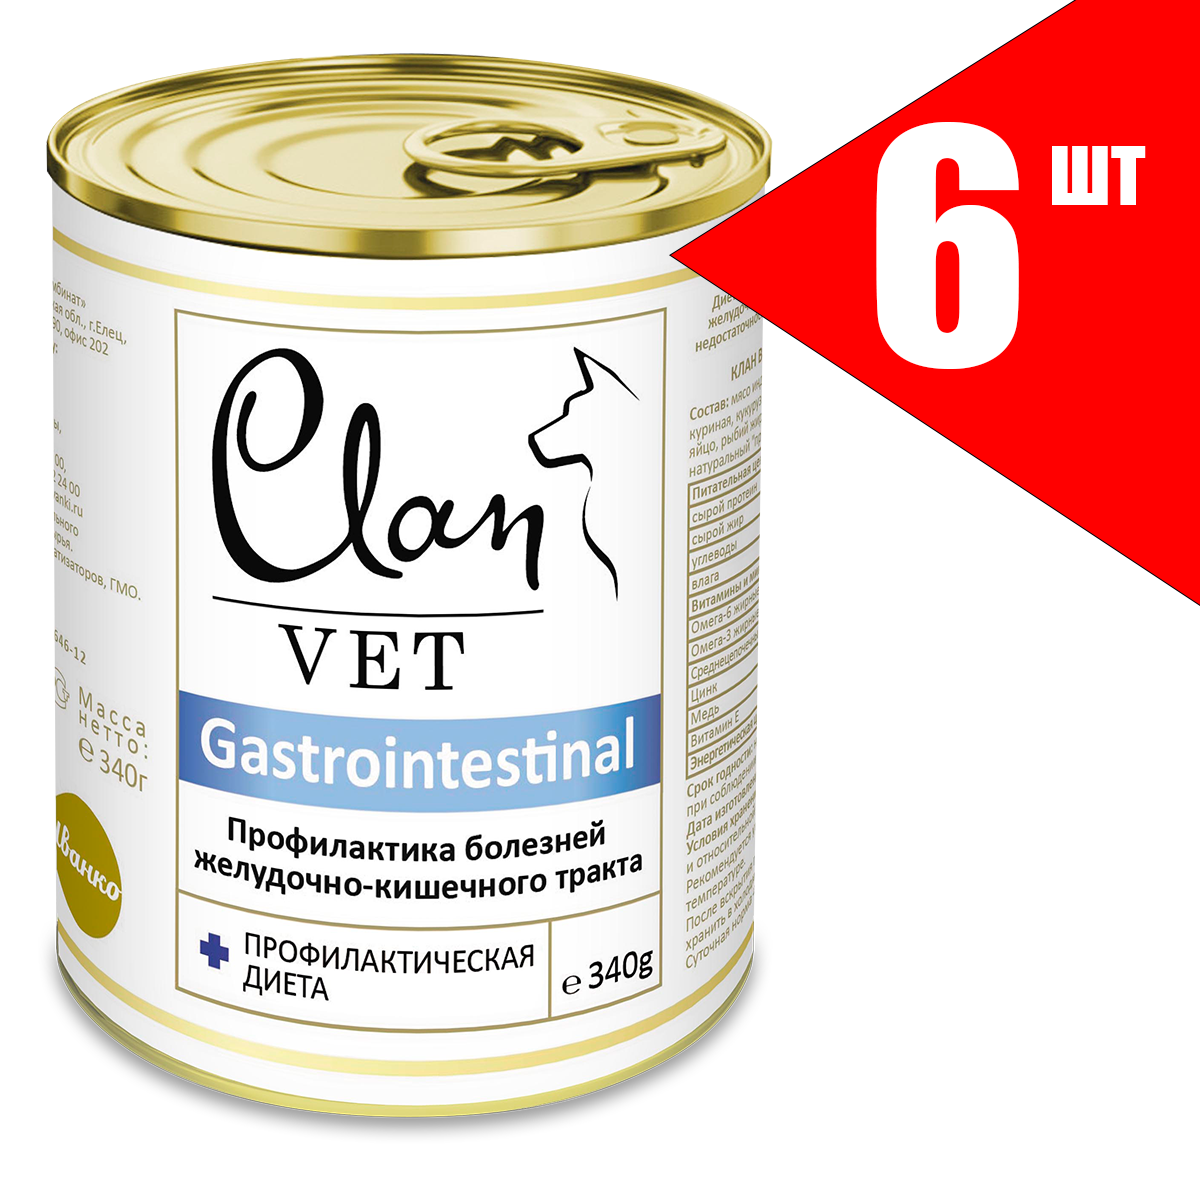 Консервы для собак Clan Vet Gastrointestinal профилактика болезней ЖКТ, 6шт по 340г